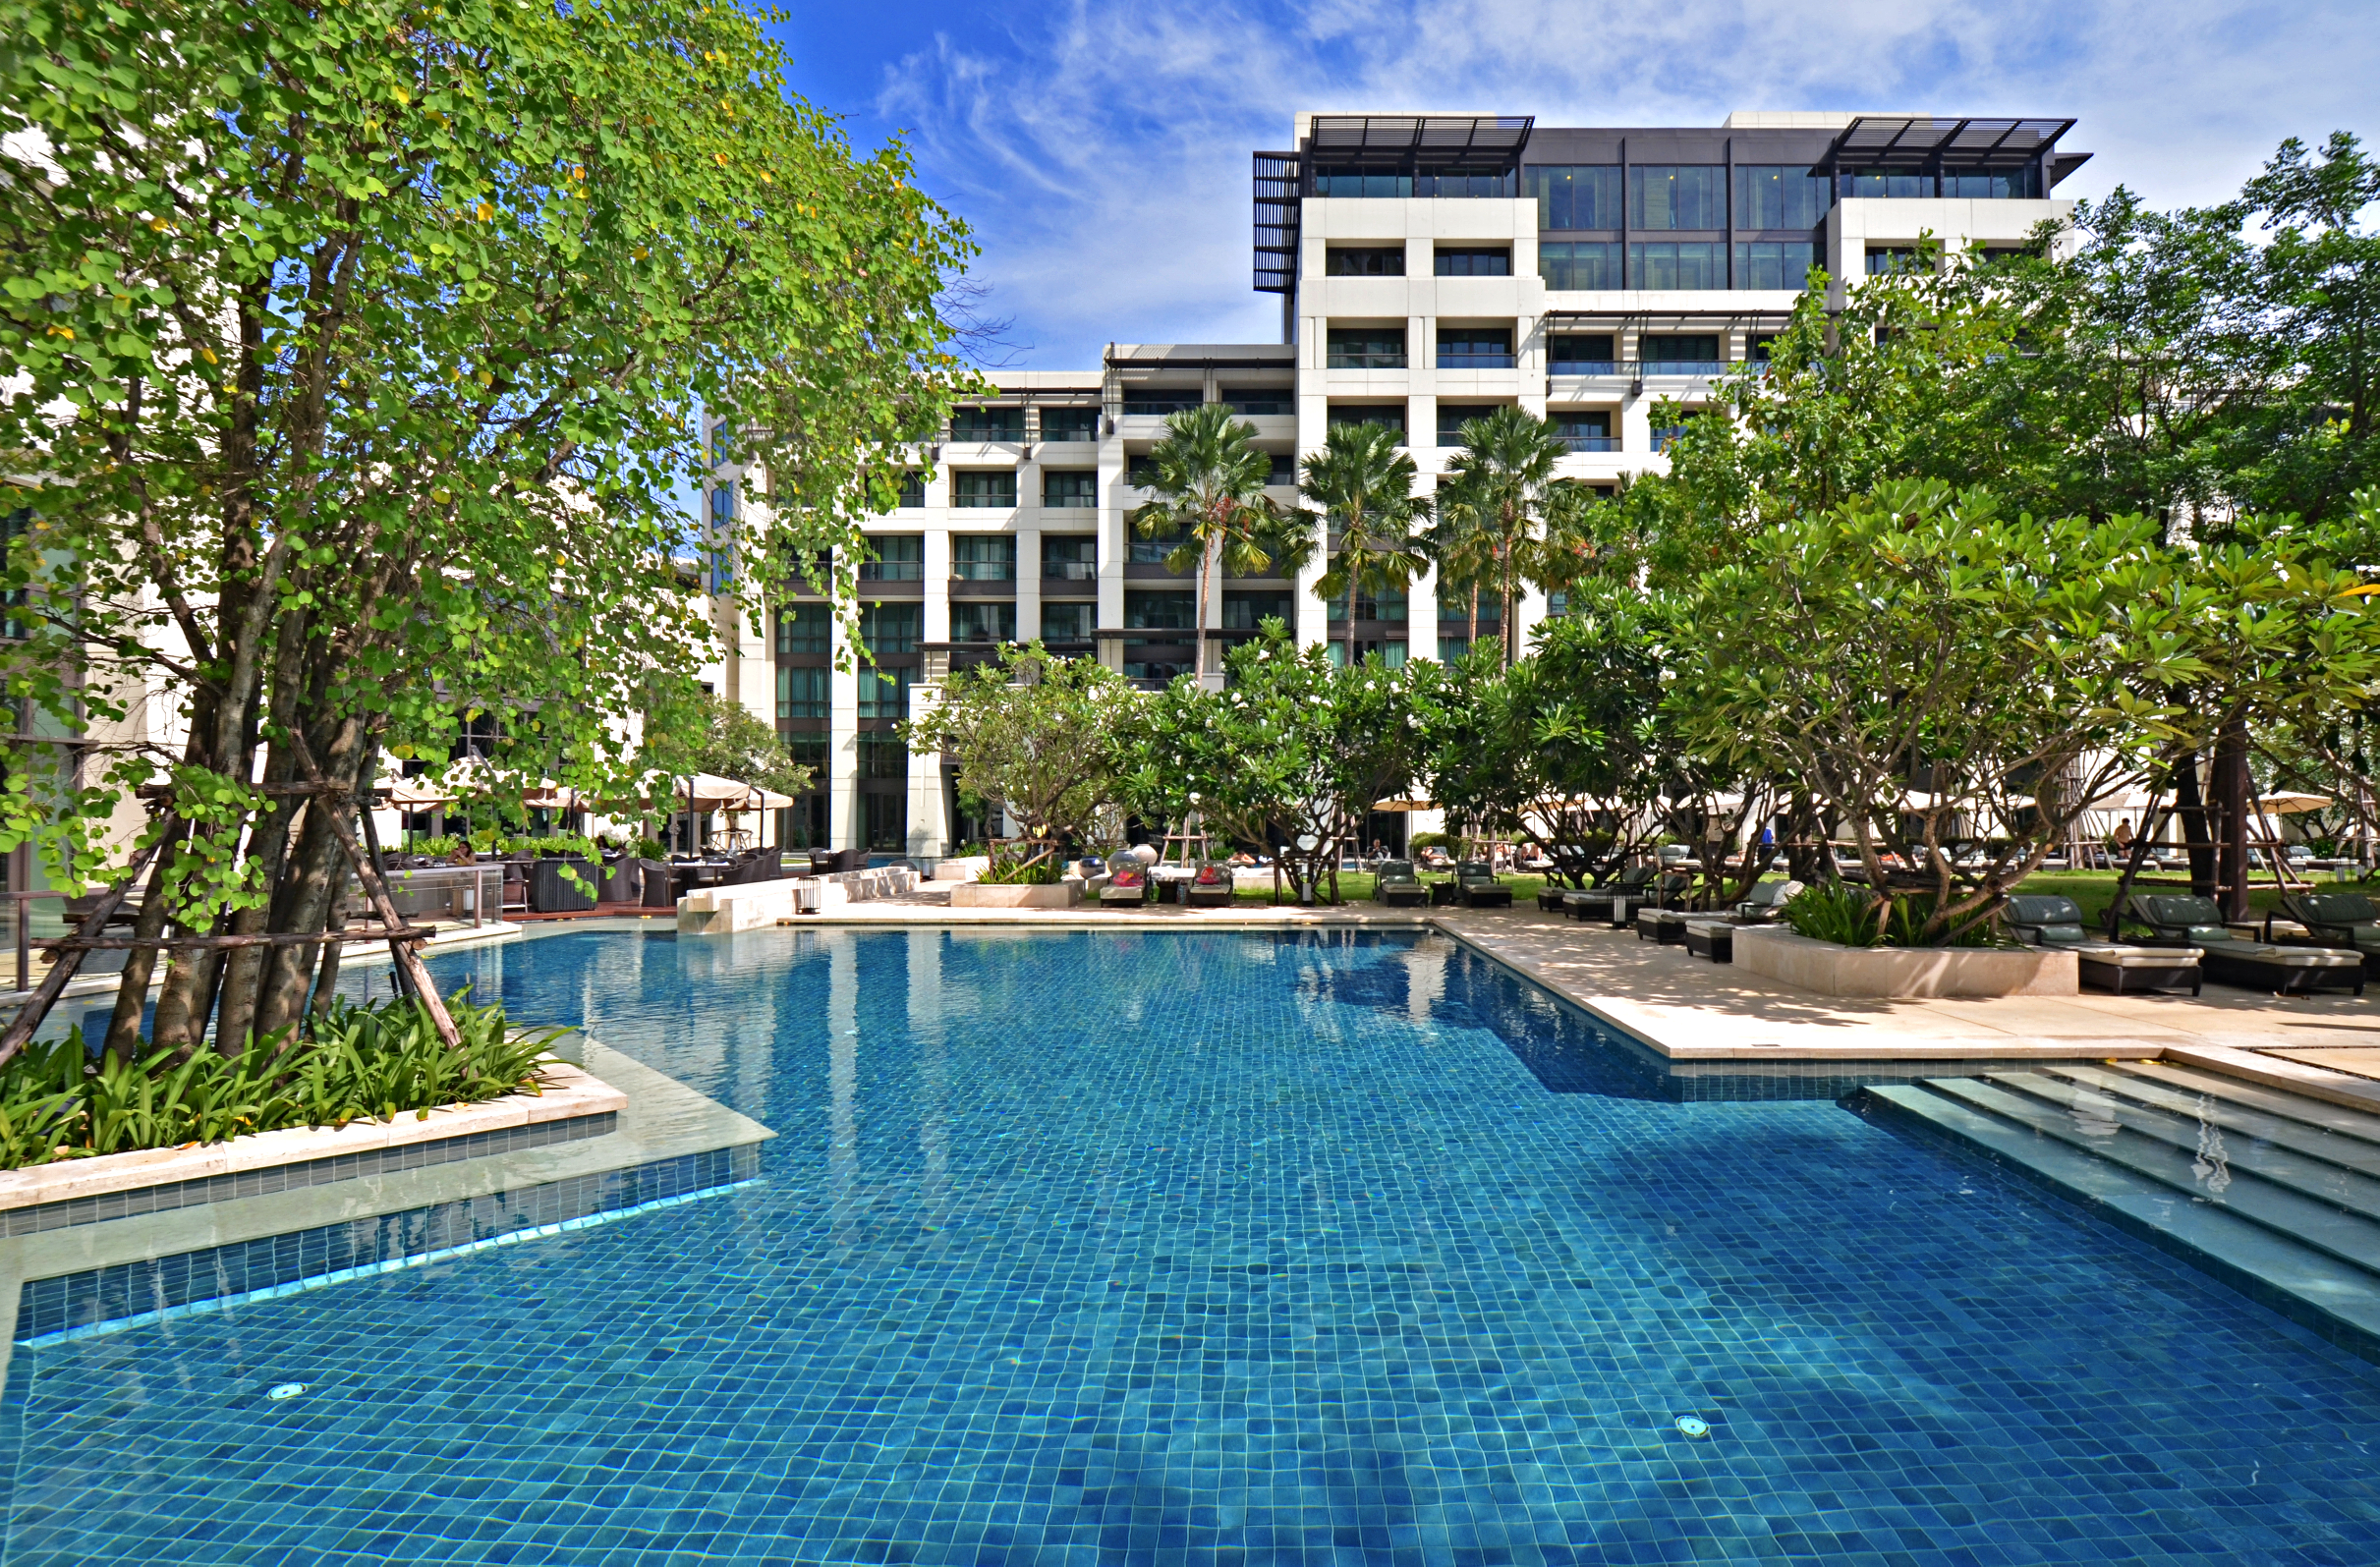 The Garden Pool at Siam Kempinski Hotel Bangkok